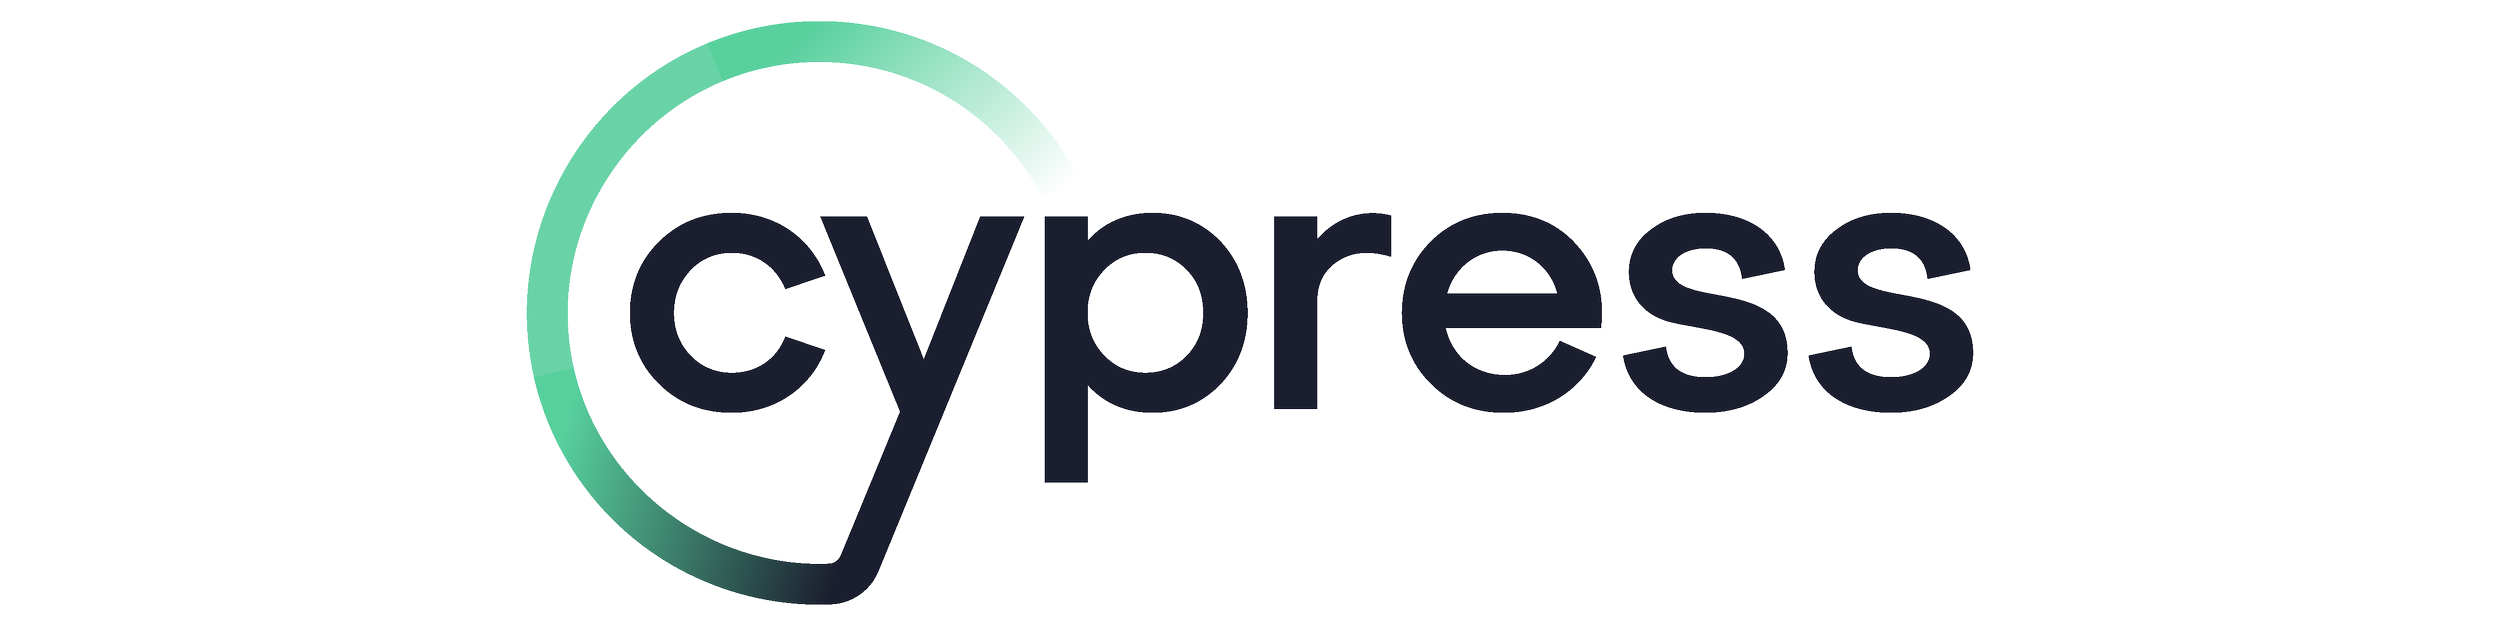 cypress-logo_landscape.png